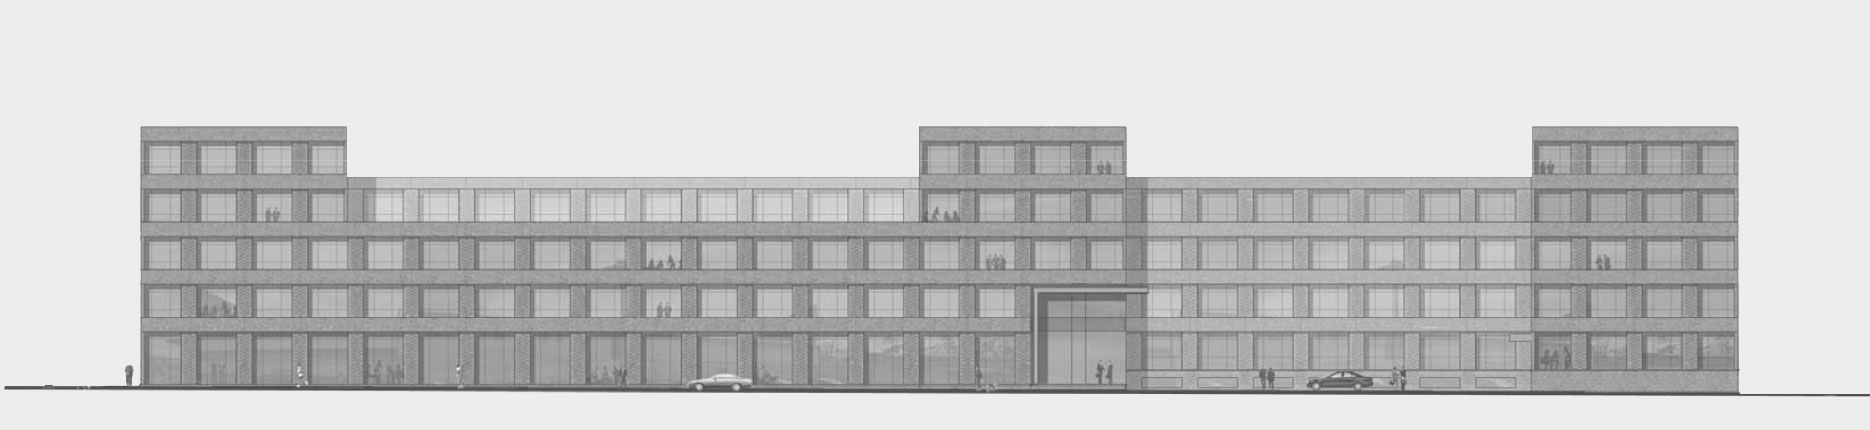 Architekturzeichnung - Diese Zeichnung zeigt ein Bauprojekt für Kapitalanleger in Hamburg Altona – KühneVision